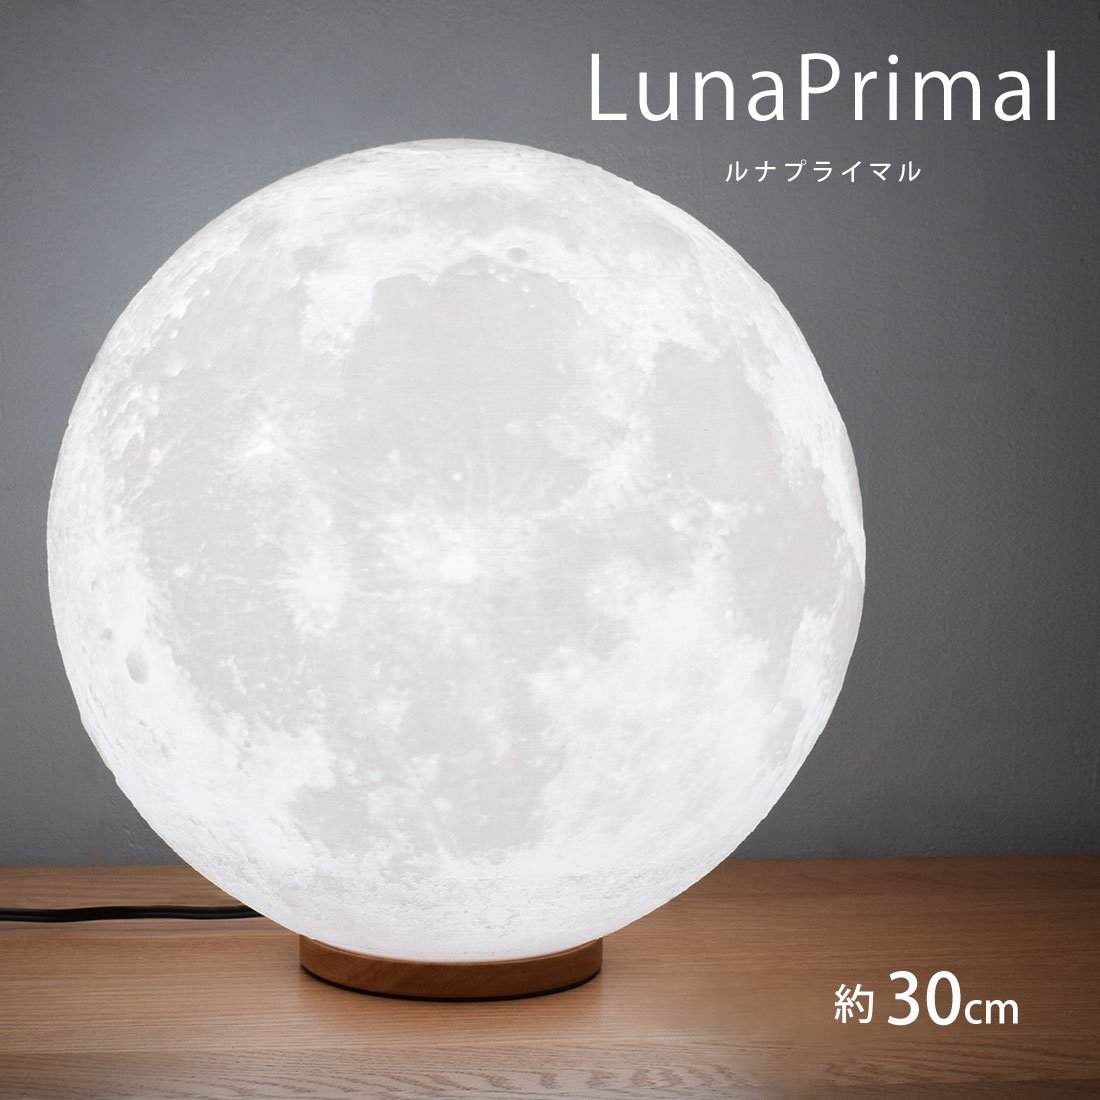 月ライト 30cm LED 間接照明 木製台座 テーブルランプ 照明 インテリア おしゃれ 月のランプ 月 寝室 おしゃれ 照明